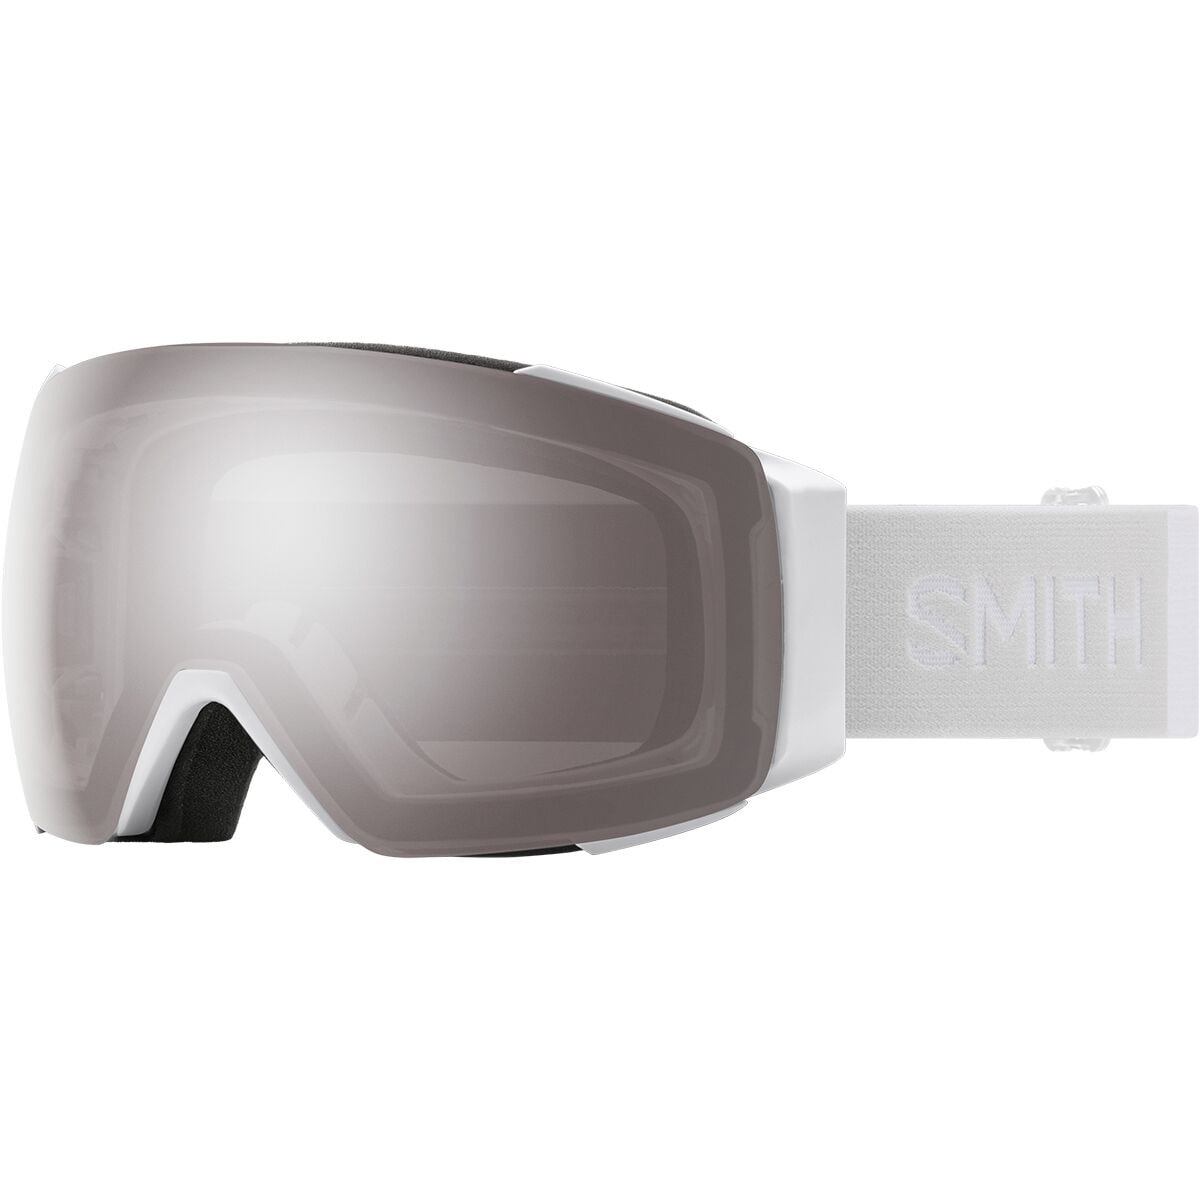 Photos - Ski Goggles Smith I/O MAG ChromaPop Goggles 